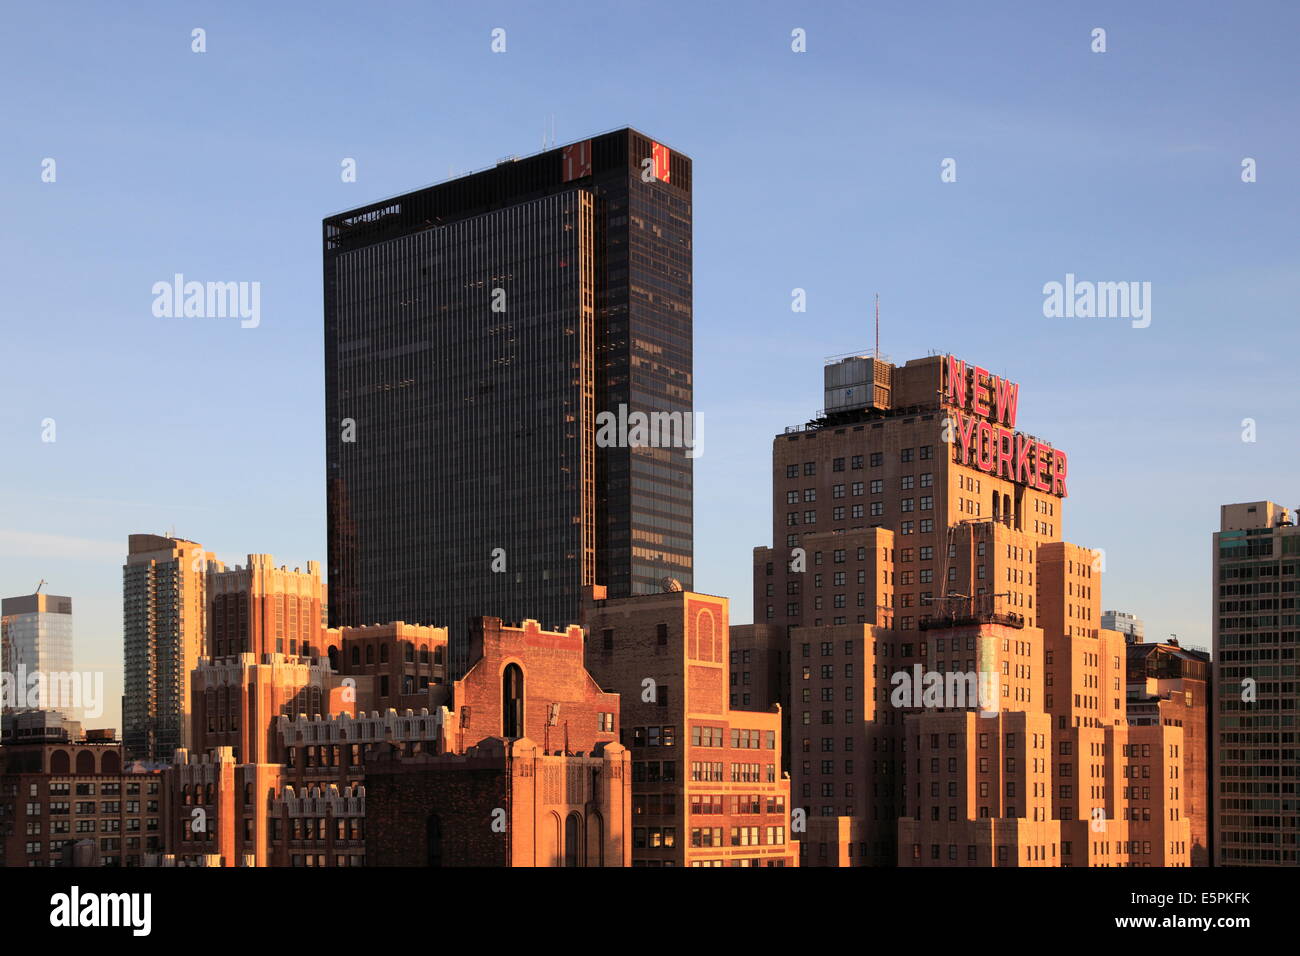 Madison Square Garden sur le côté gauche, New Yorker Hotel, Midtown skyline, West Side, Manhattan, New York City, États-Unis d'Amérique Banque D'Images